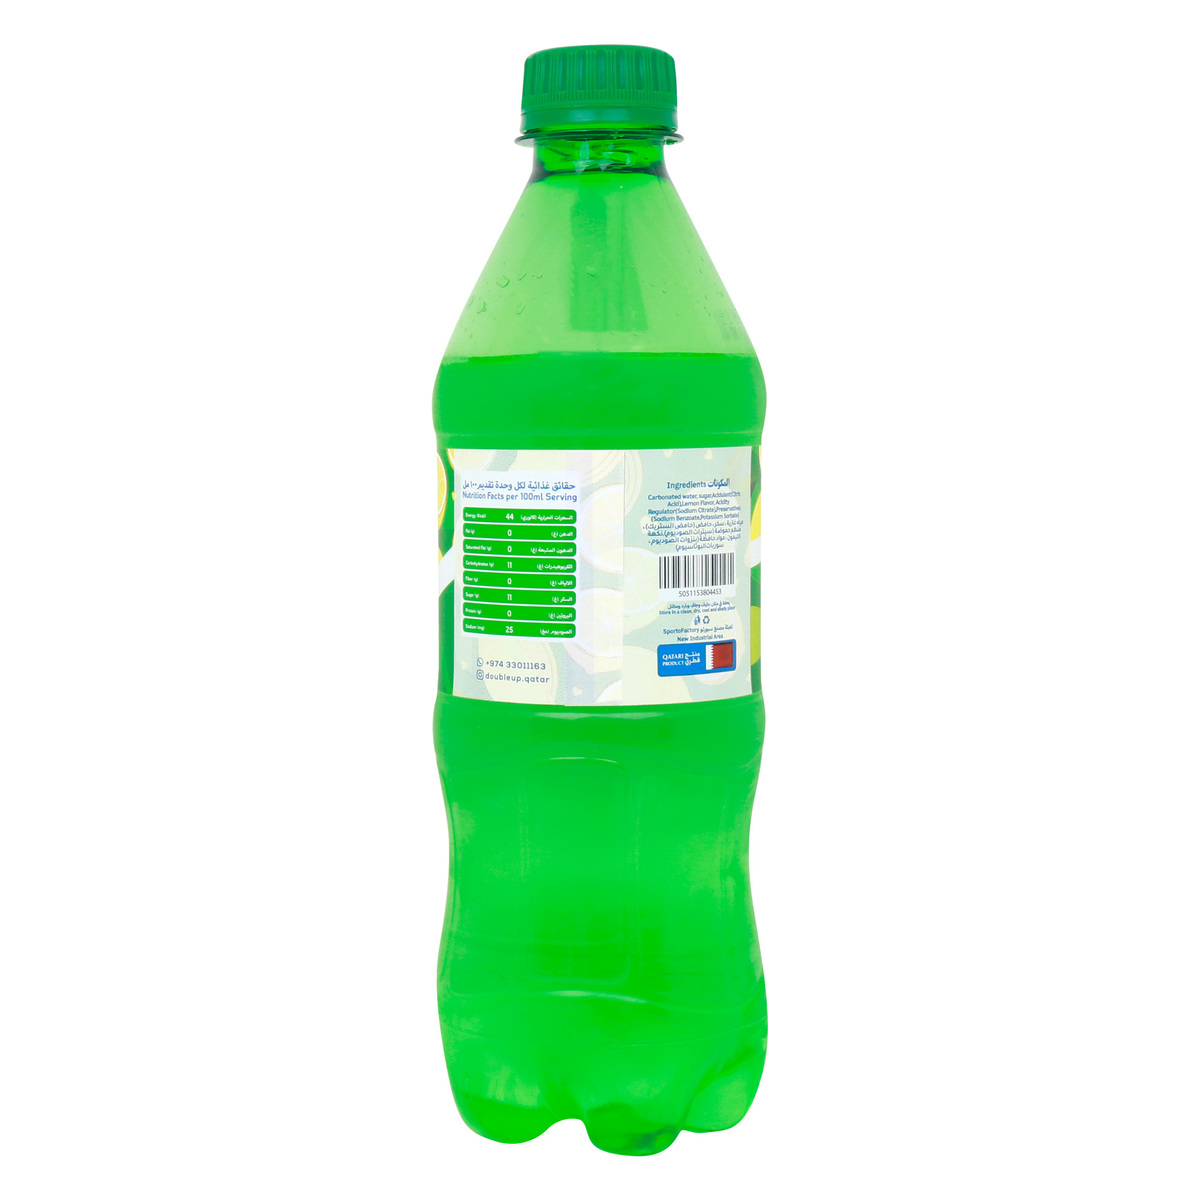 Double Up Lemon Pet Bottle Carbonated Drinks 12 x 500 ml